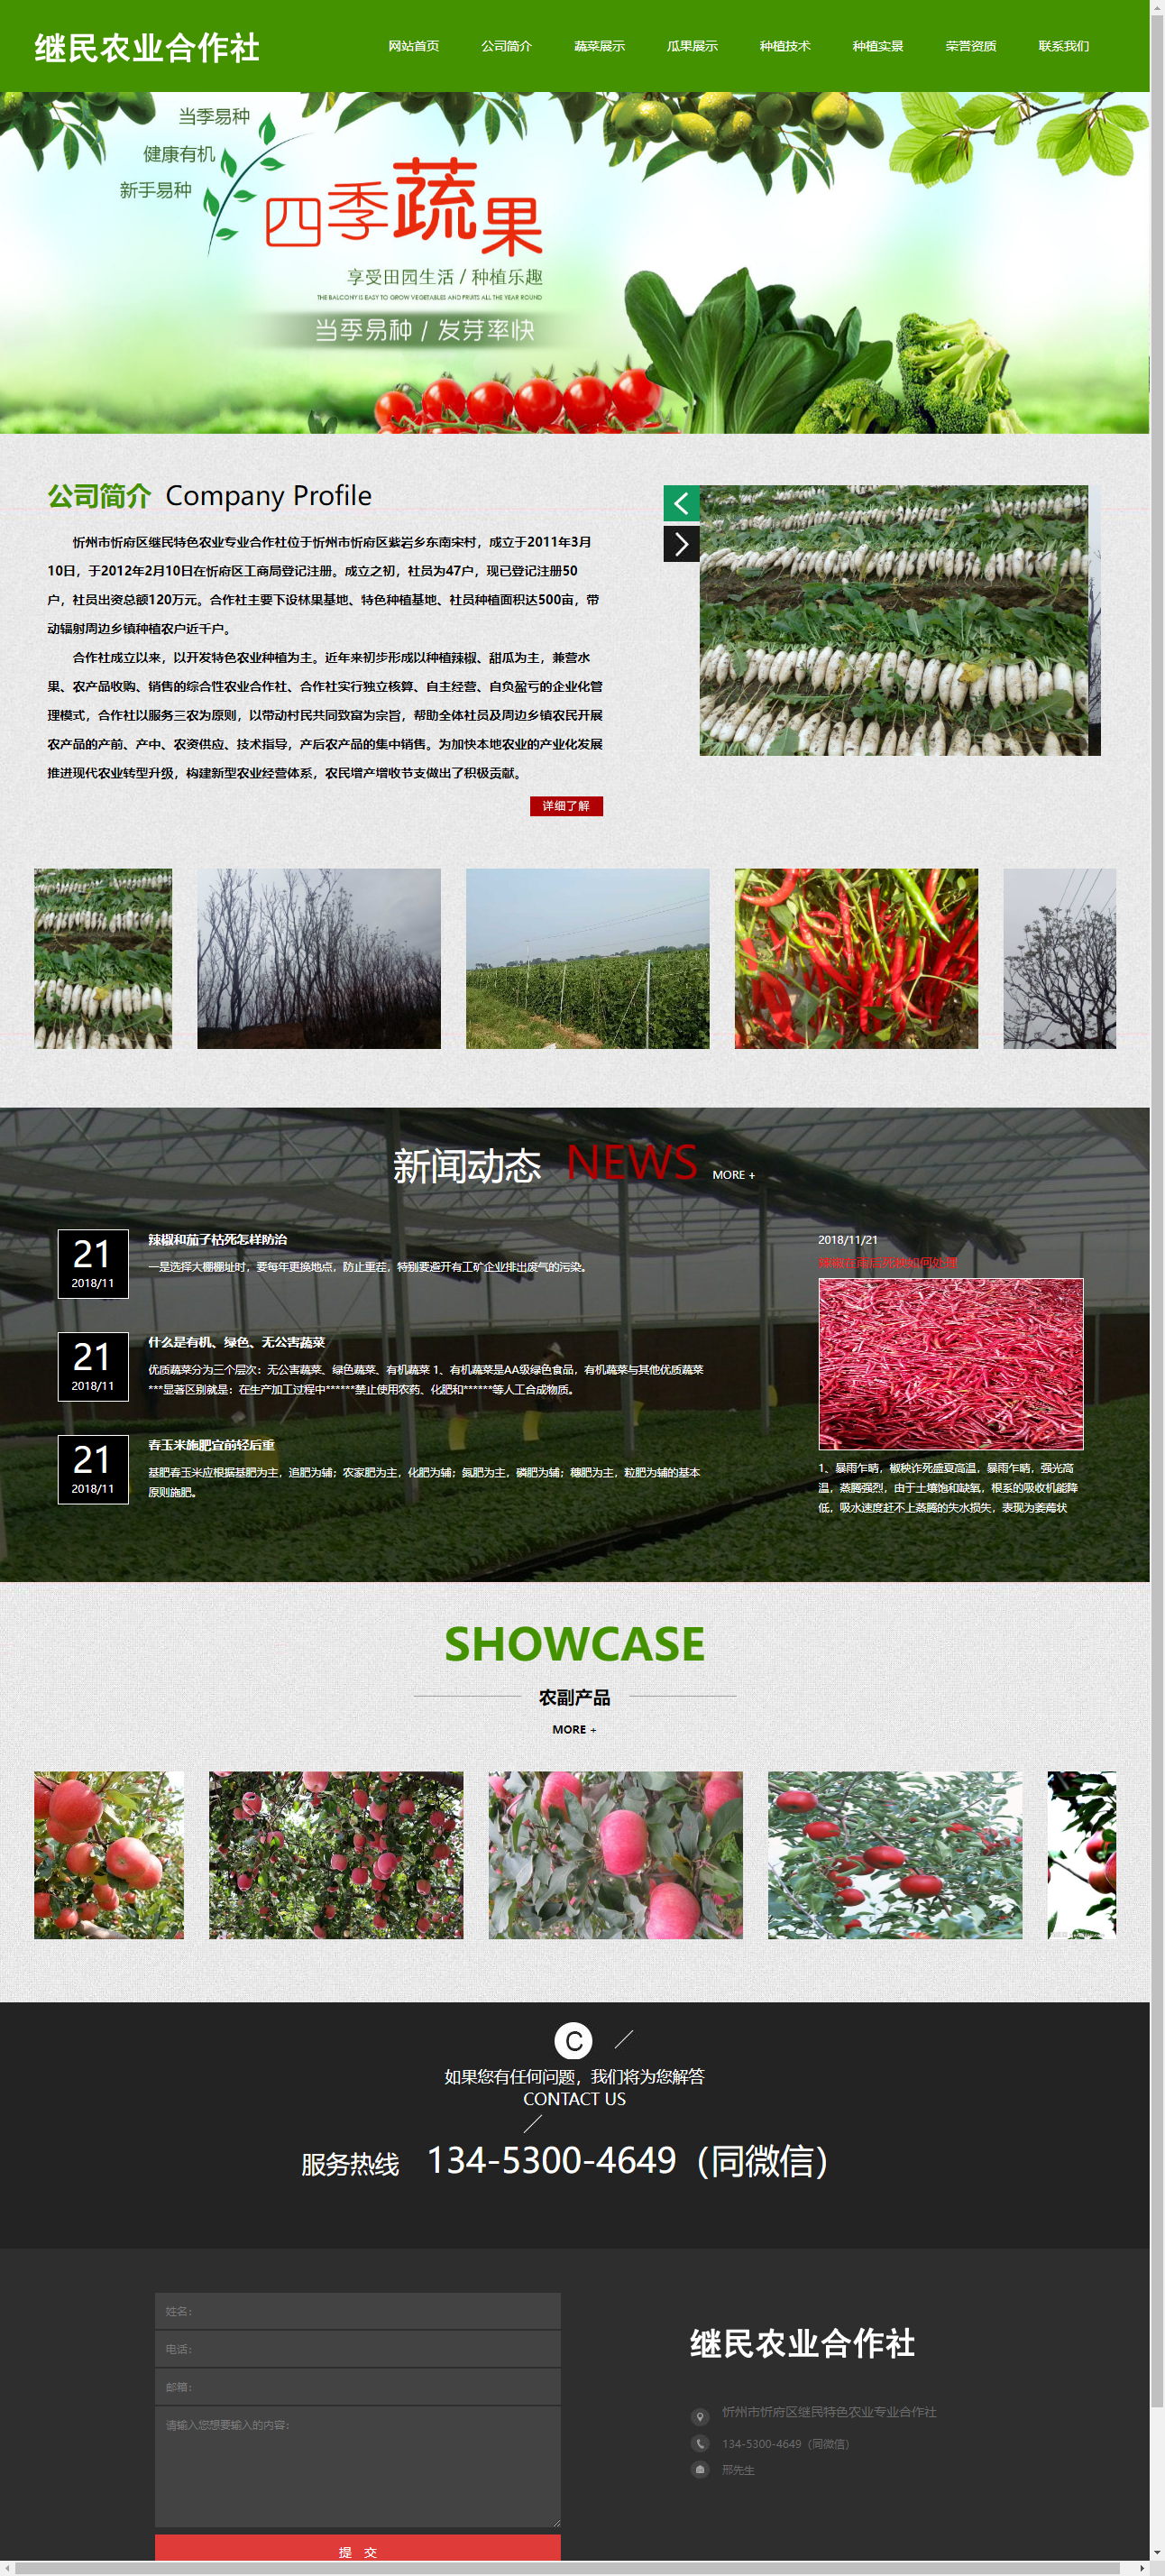 忻州市忻府区继民特色农业专业合作社网站案例